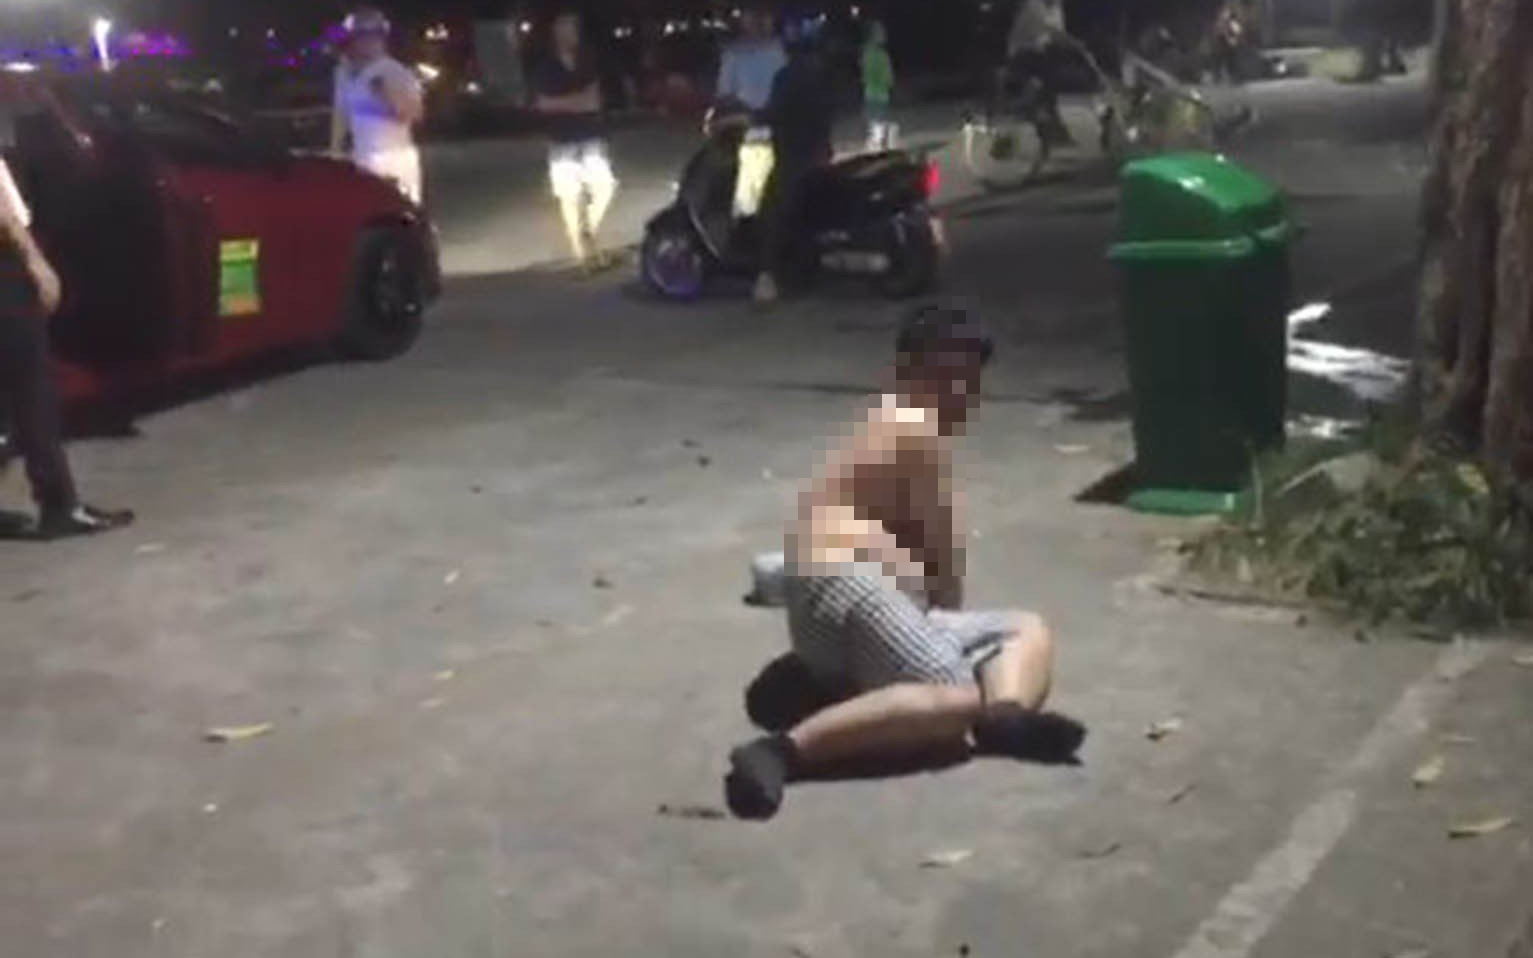 Sẽ kỷ luật Phó trưởng ban ở Thừa Thiên Huế say xỉn, hành động phản cảm nơi công cộng